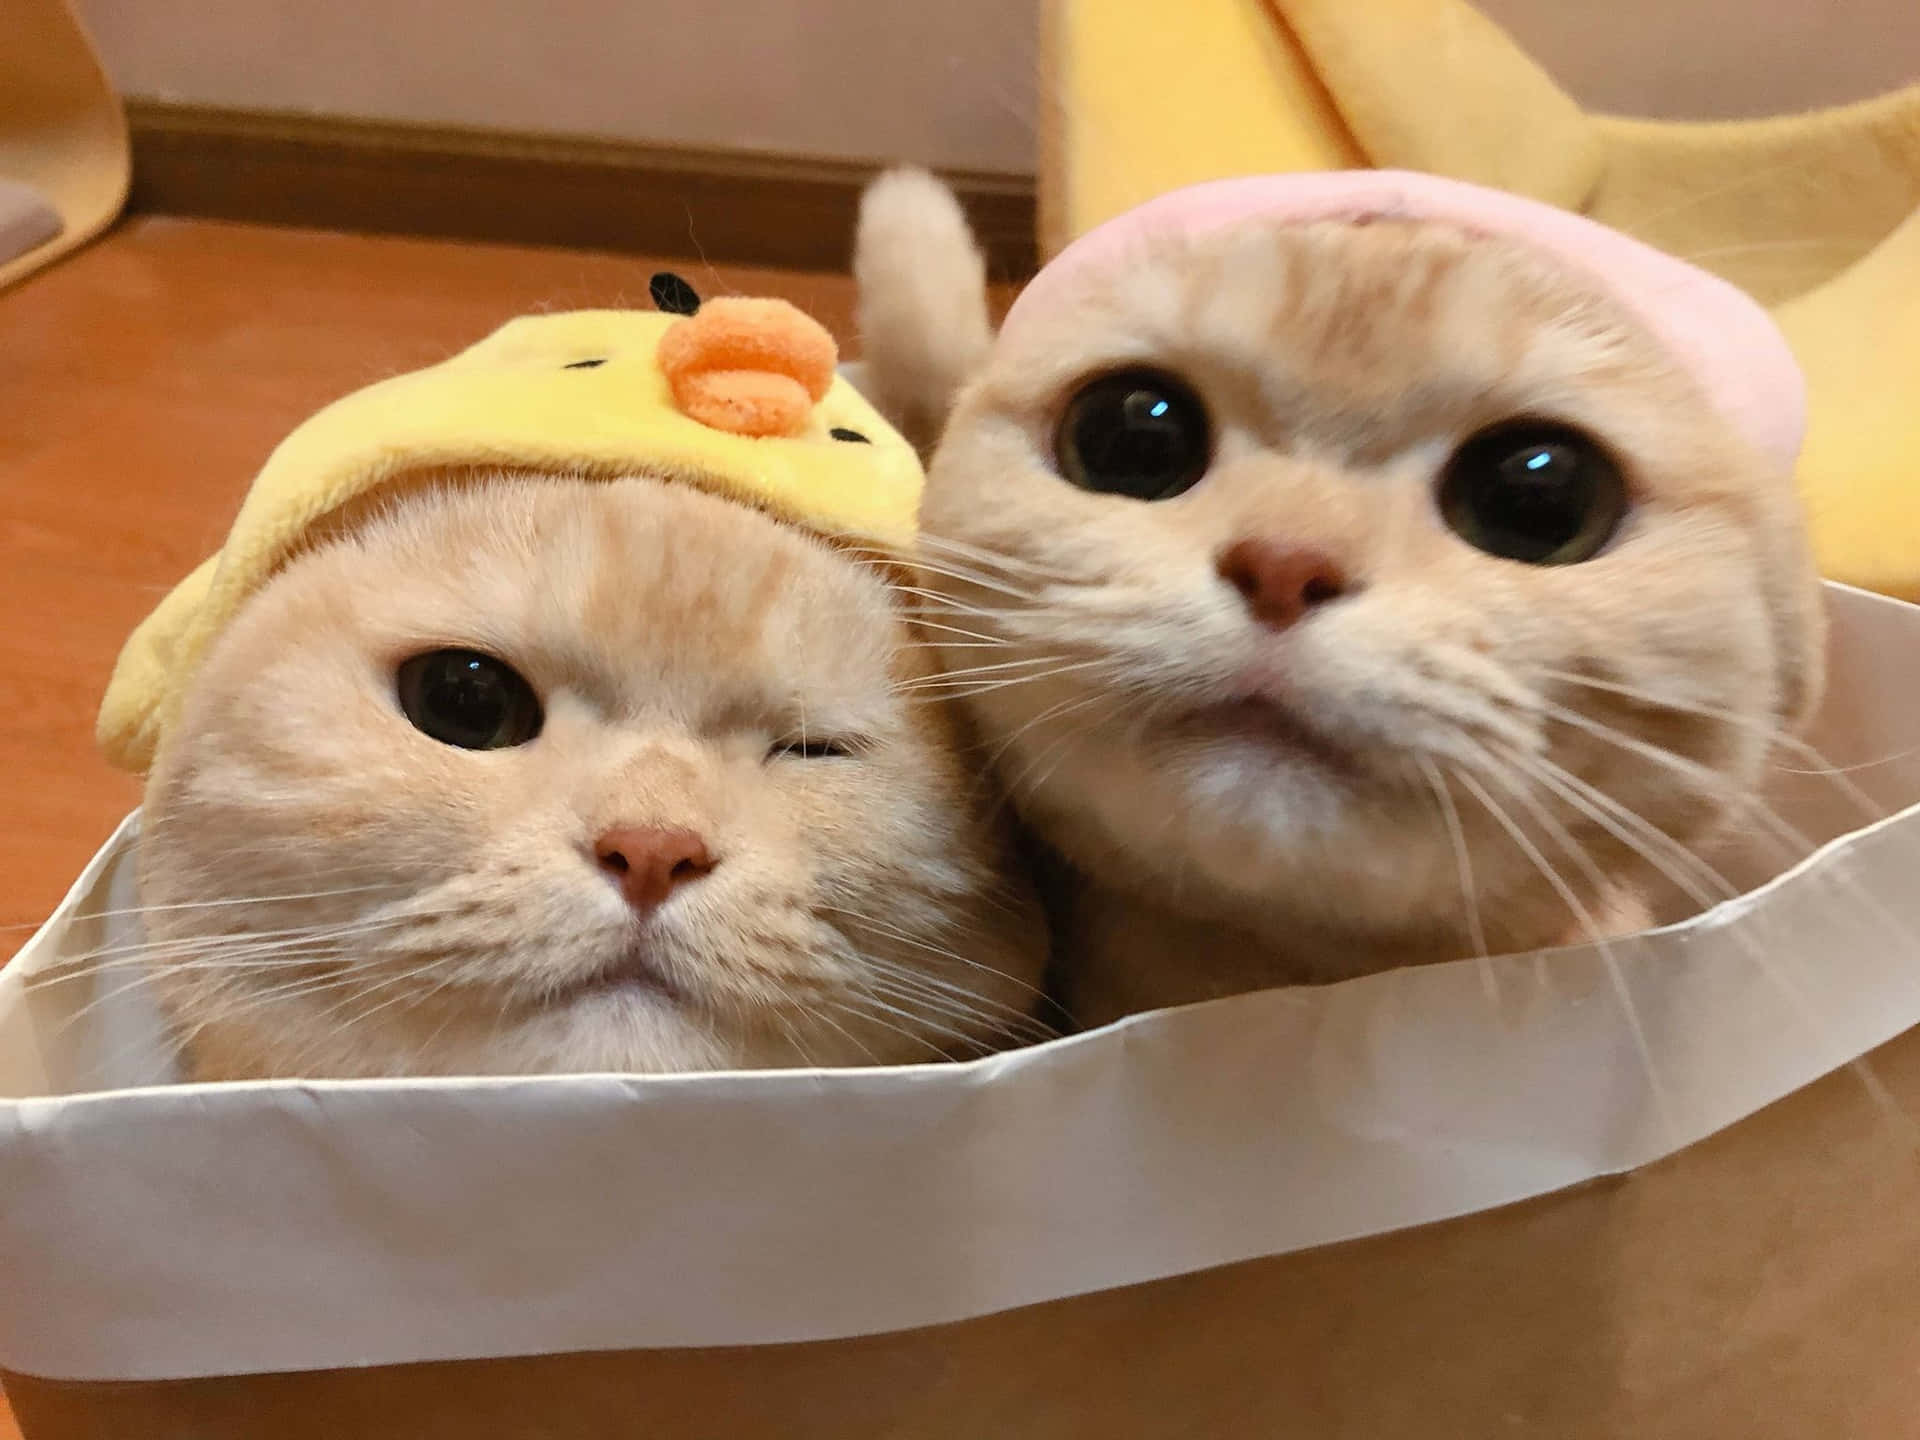 Download Adorable Yellow Fur Cat Pair PFP Wallpaper